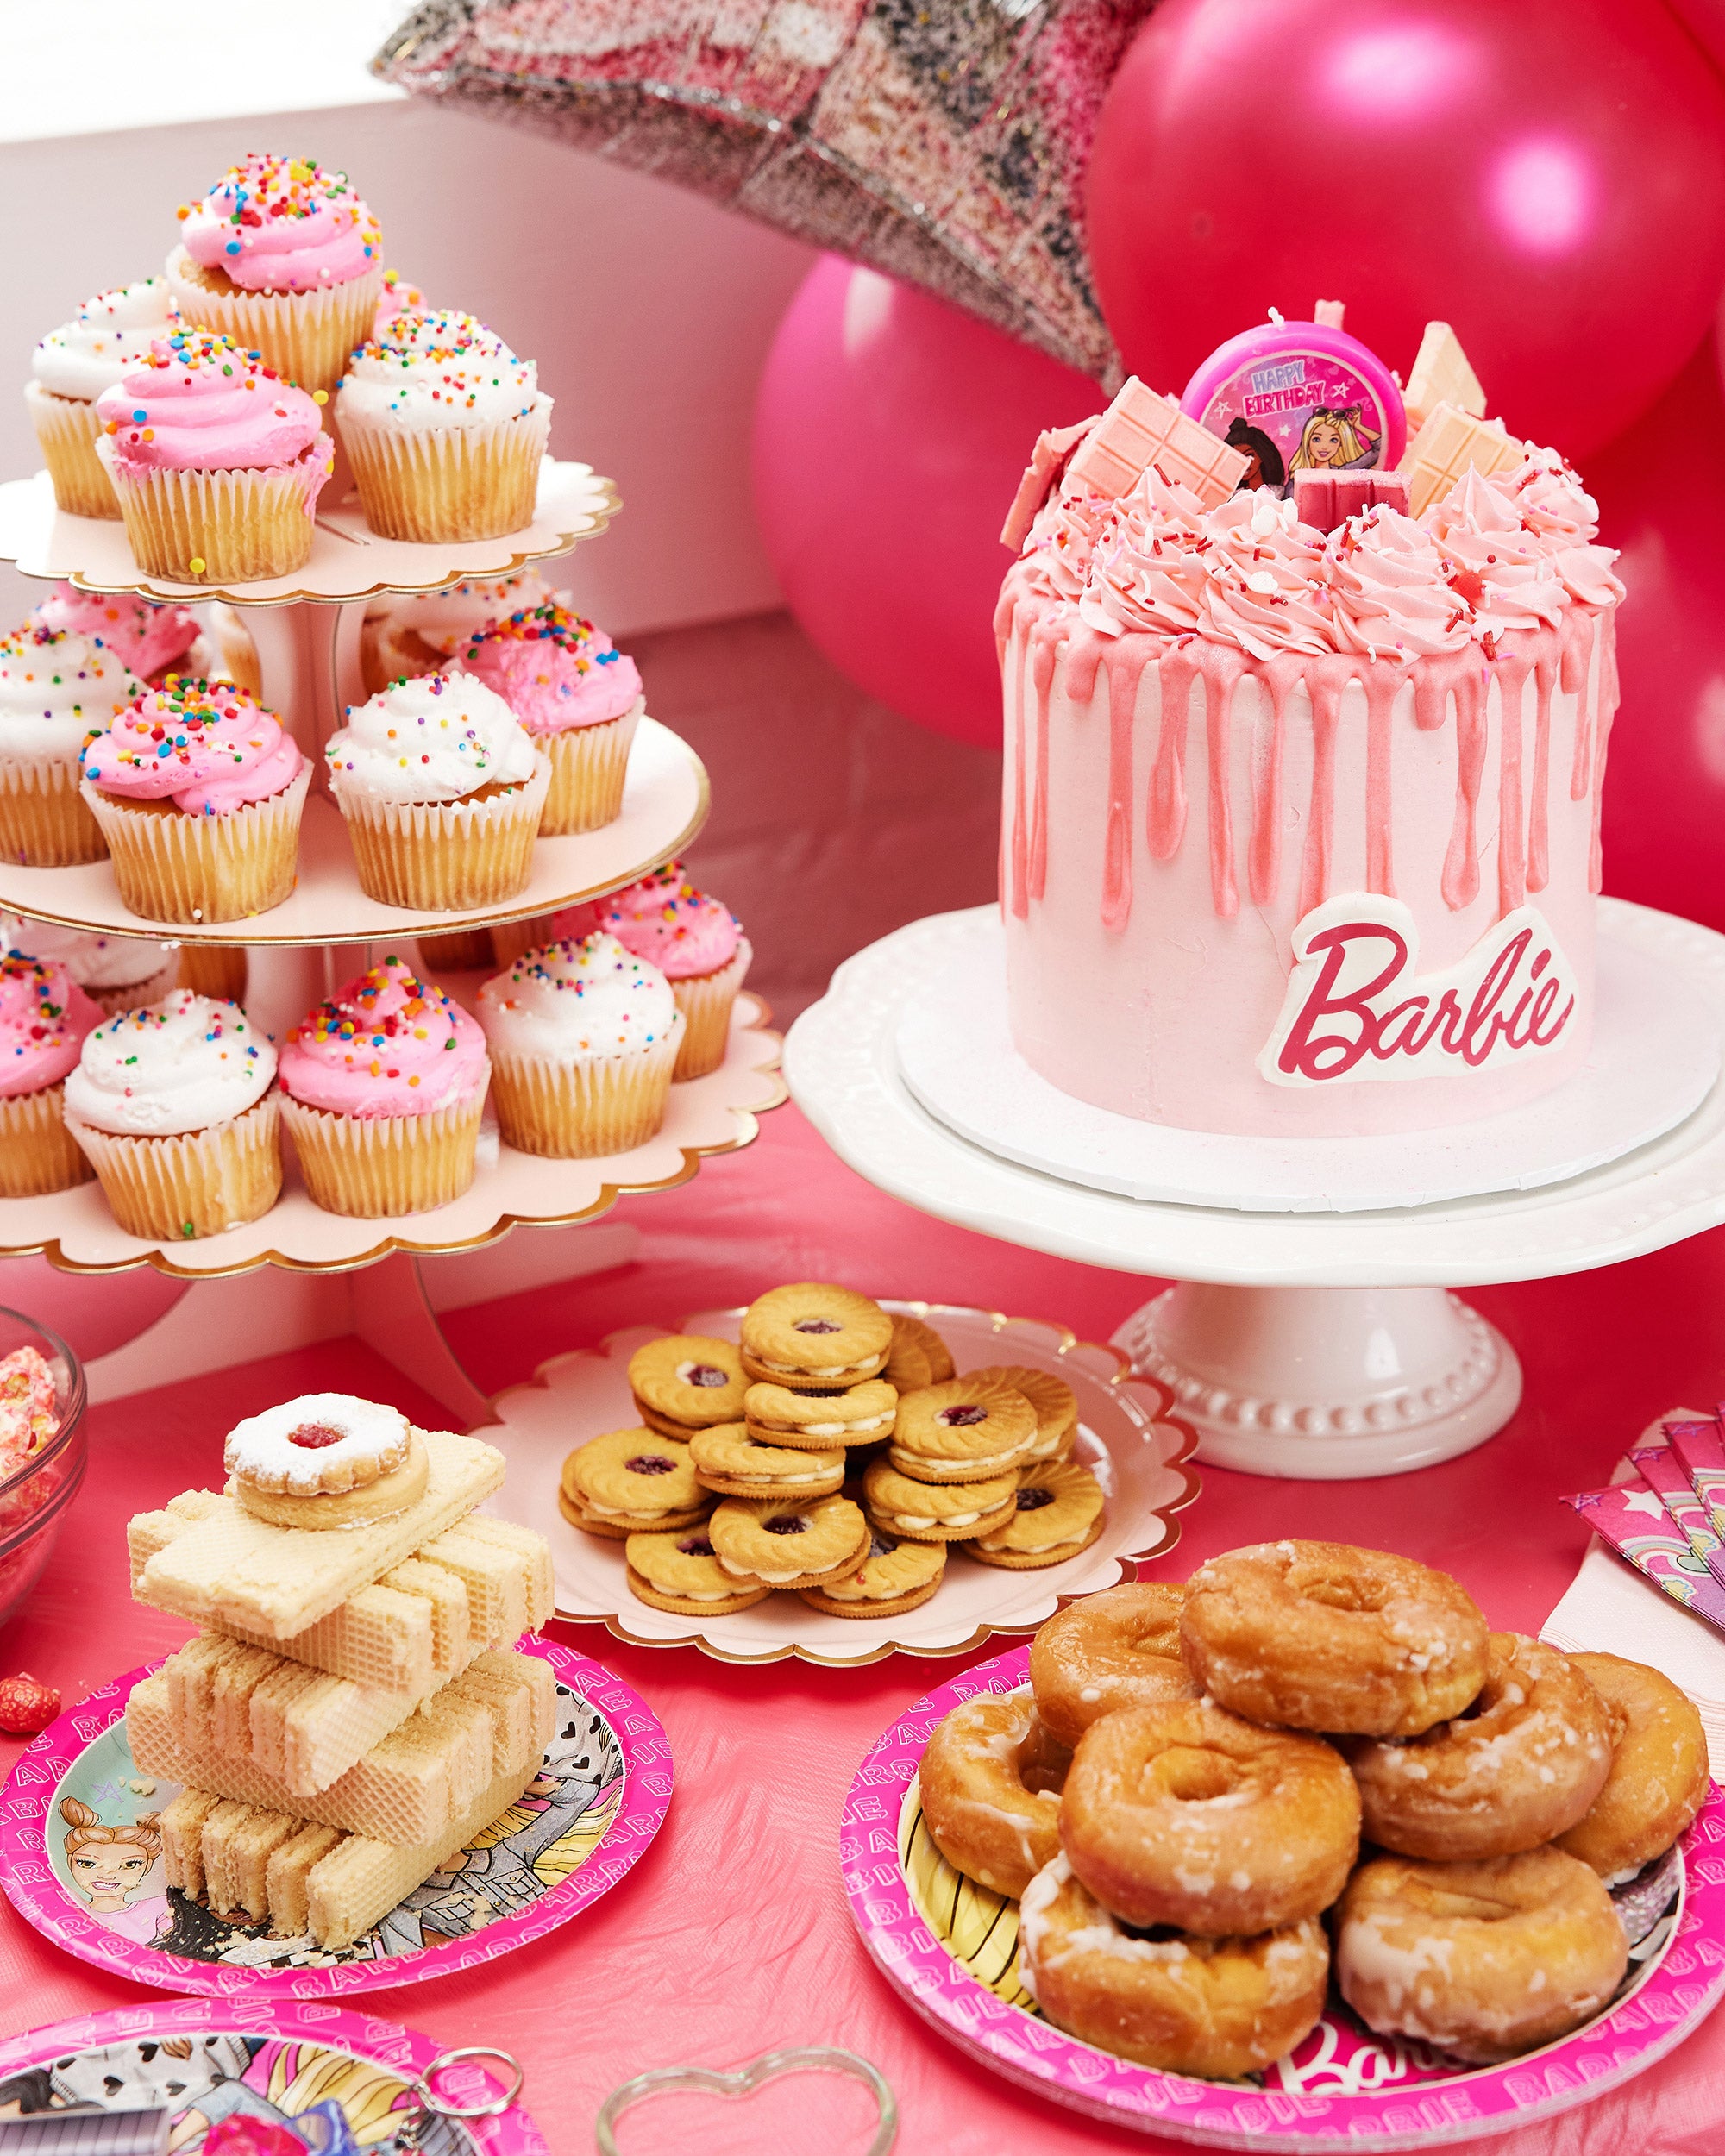 Merveilleuse image comestible Barbie pour gâteau